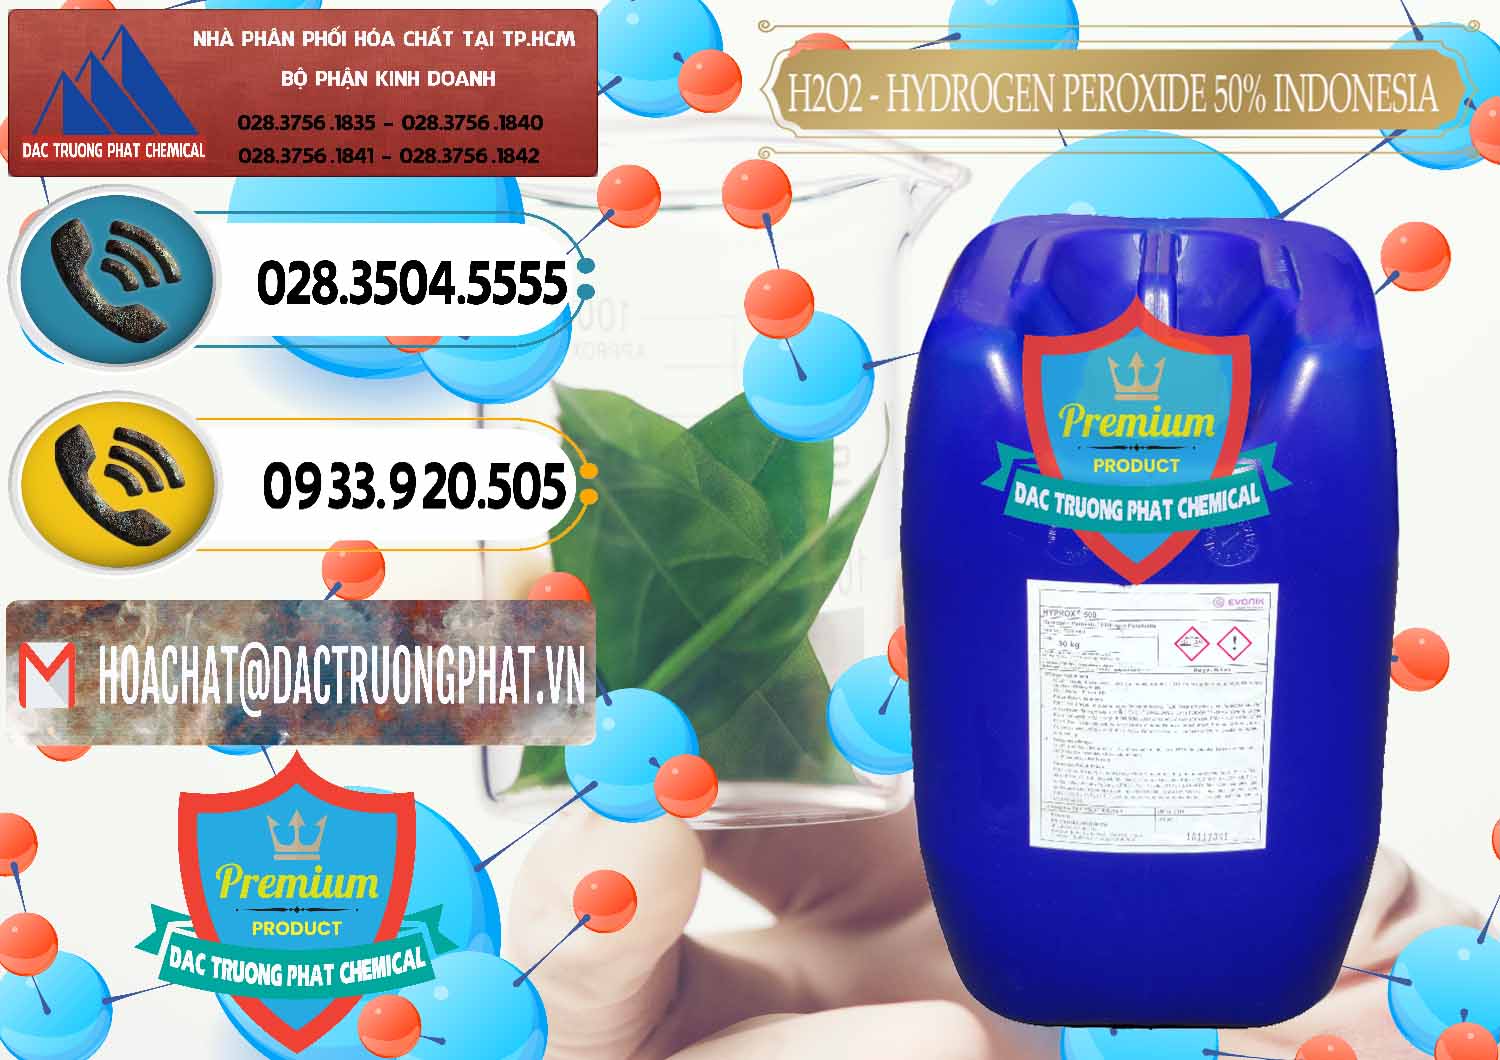 Đơn vị bán & cung ứng H2O2 - Hydrogen Peroxide 50% Evonik Indonesia - 0070 - Nơi chuyên kinh doanh _ phân phối hóa chất tại TP.HCM - hoachatdetnhuom.vn